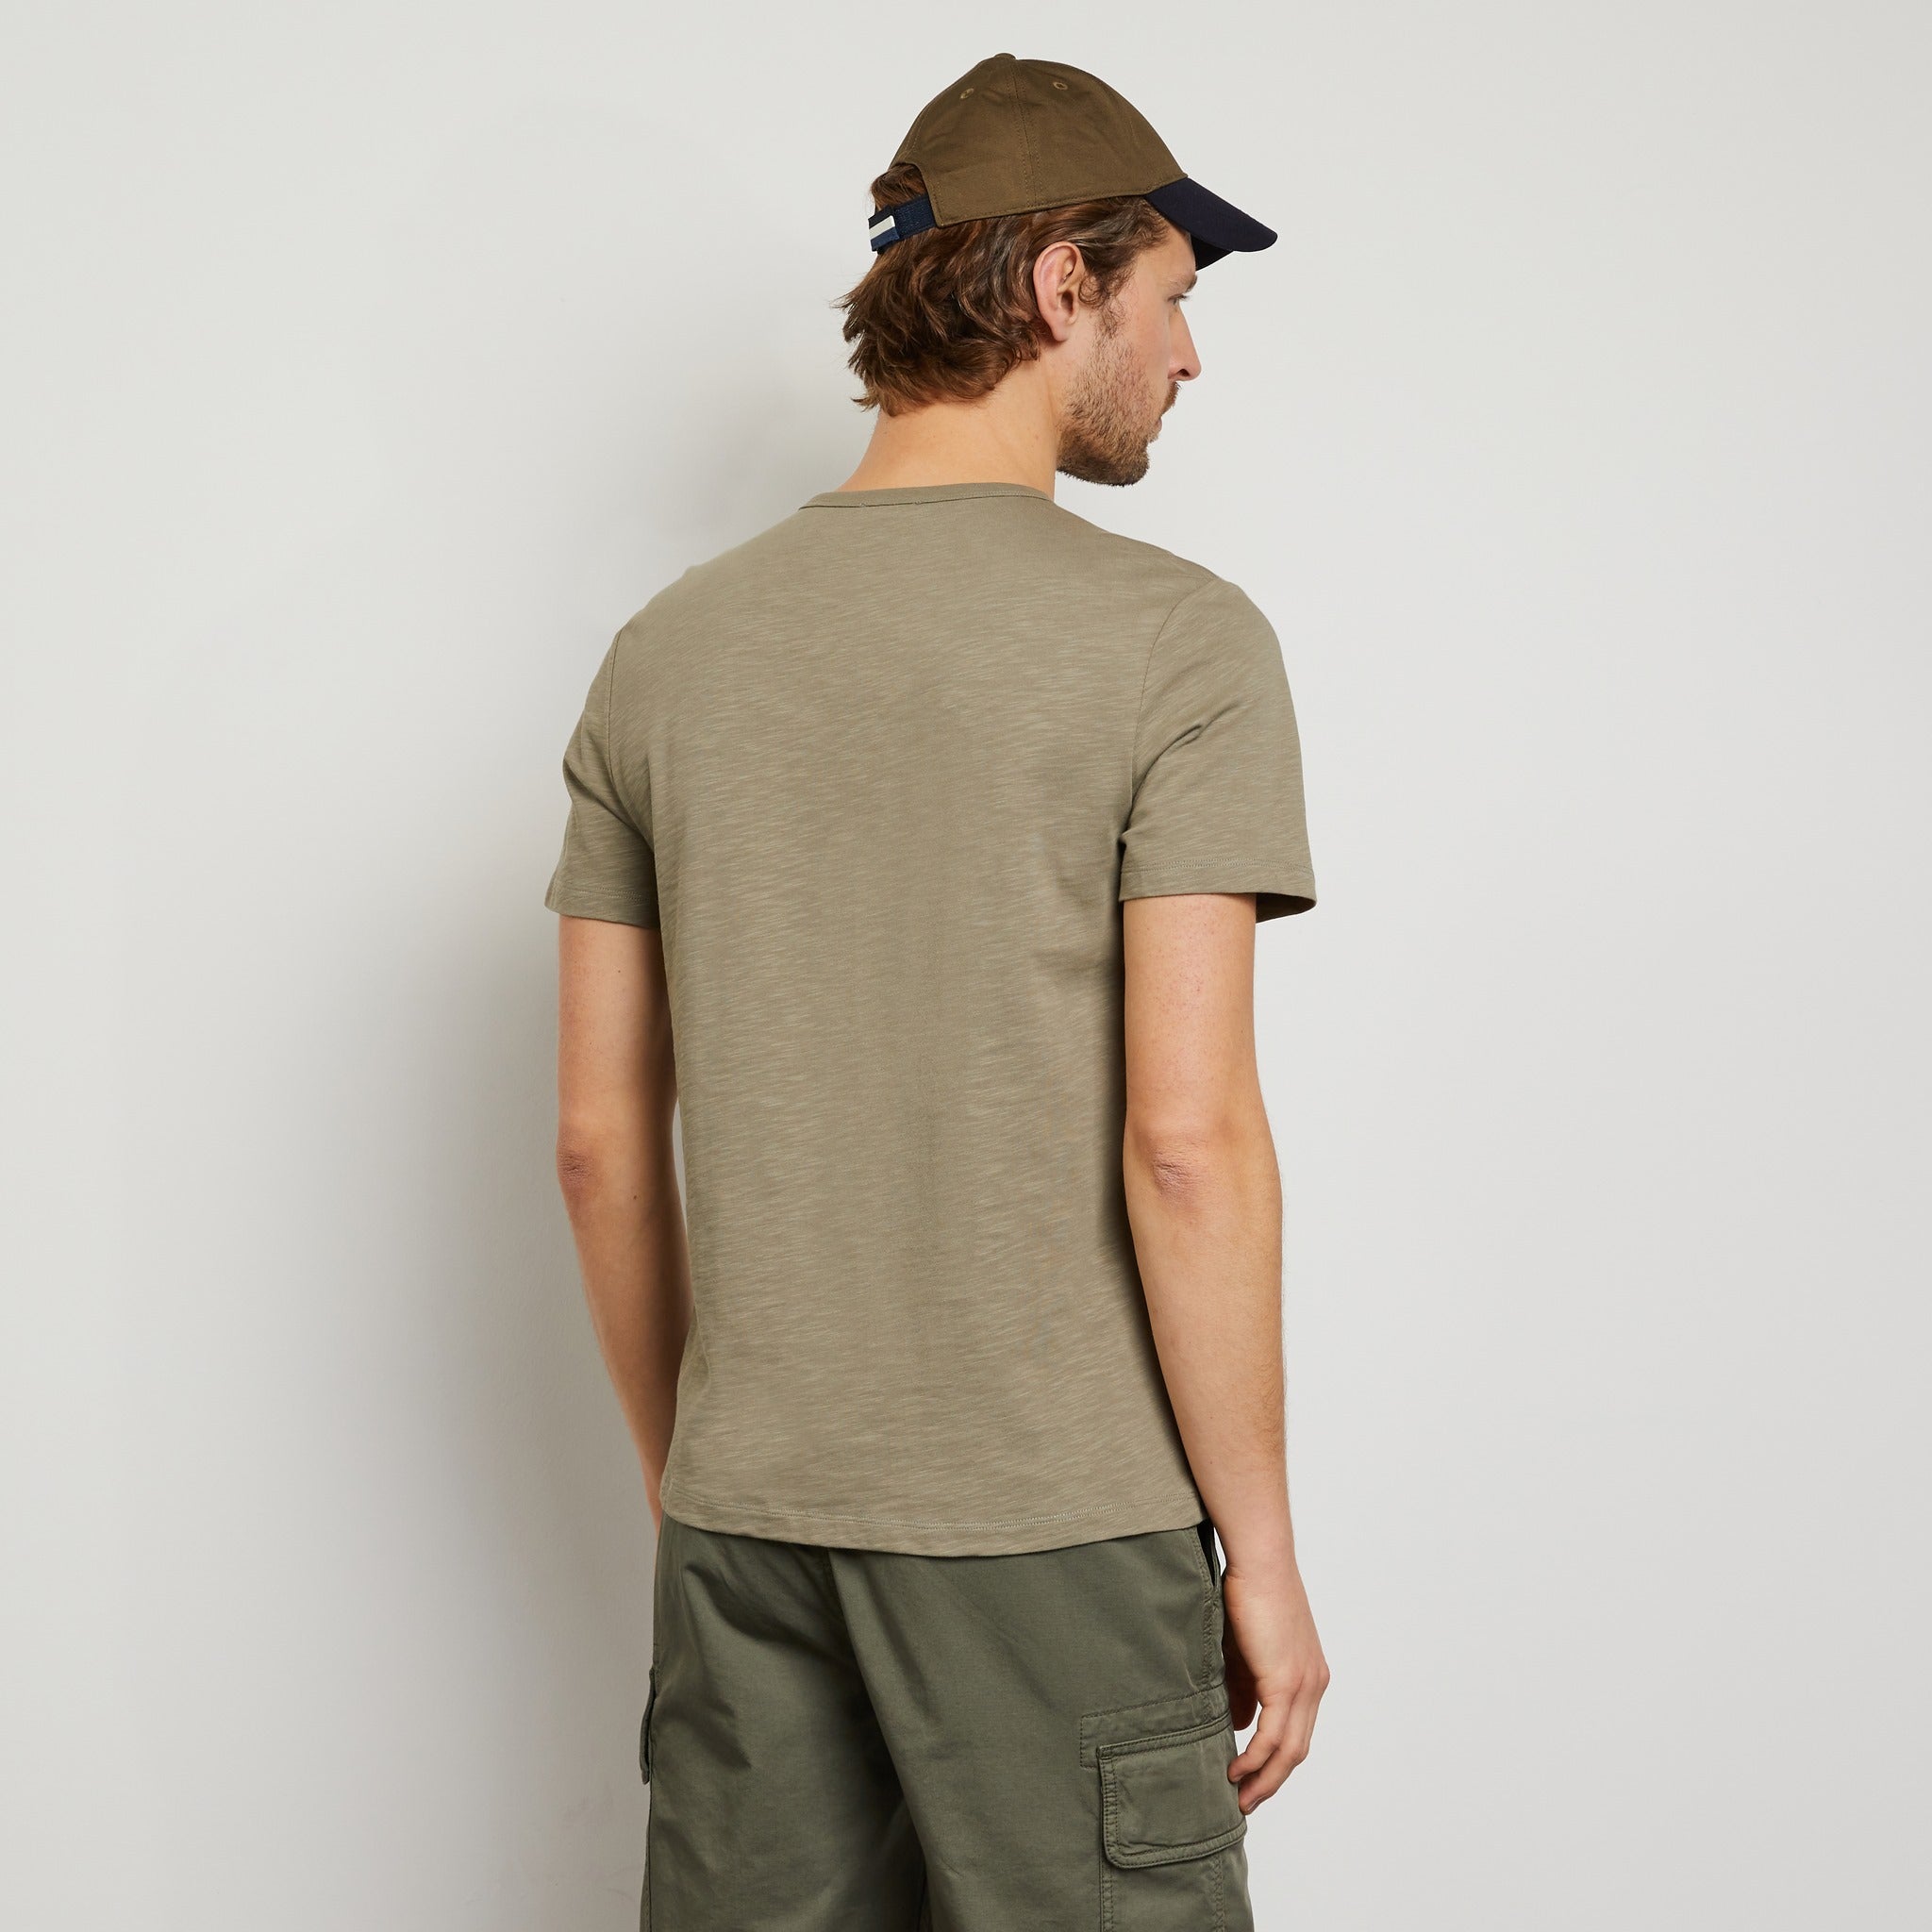 Plain Khaki Short-Sleeved T-Shirt